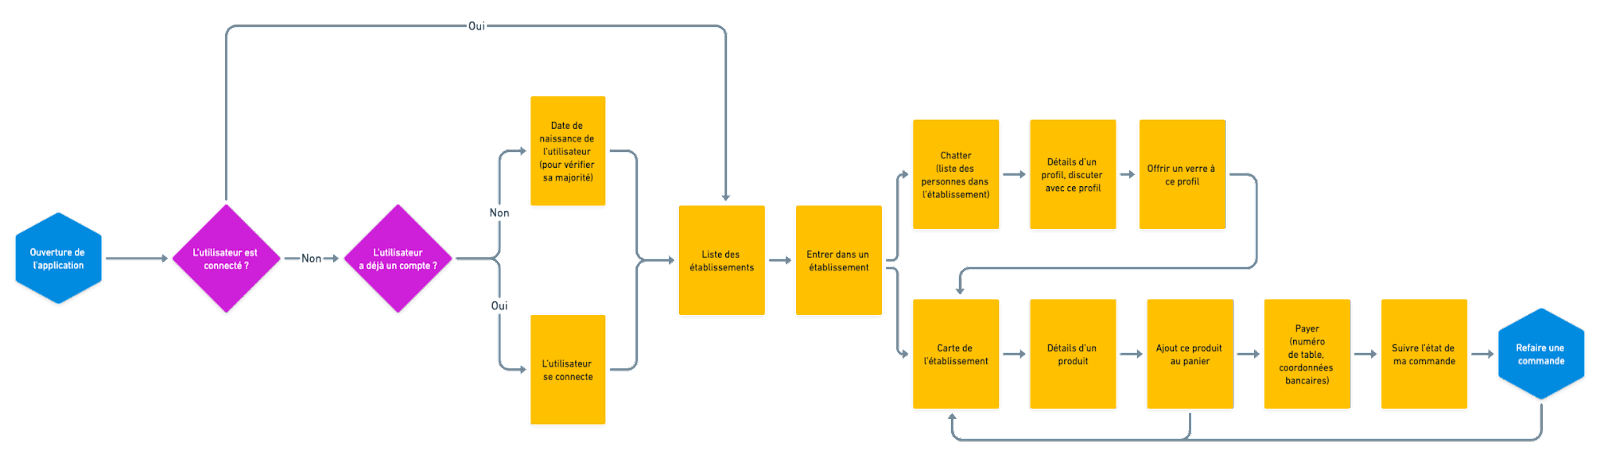 schéma d'un userflow simple